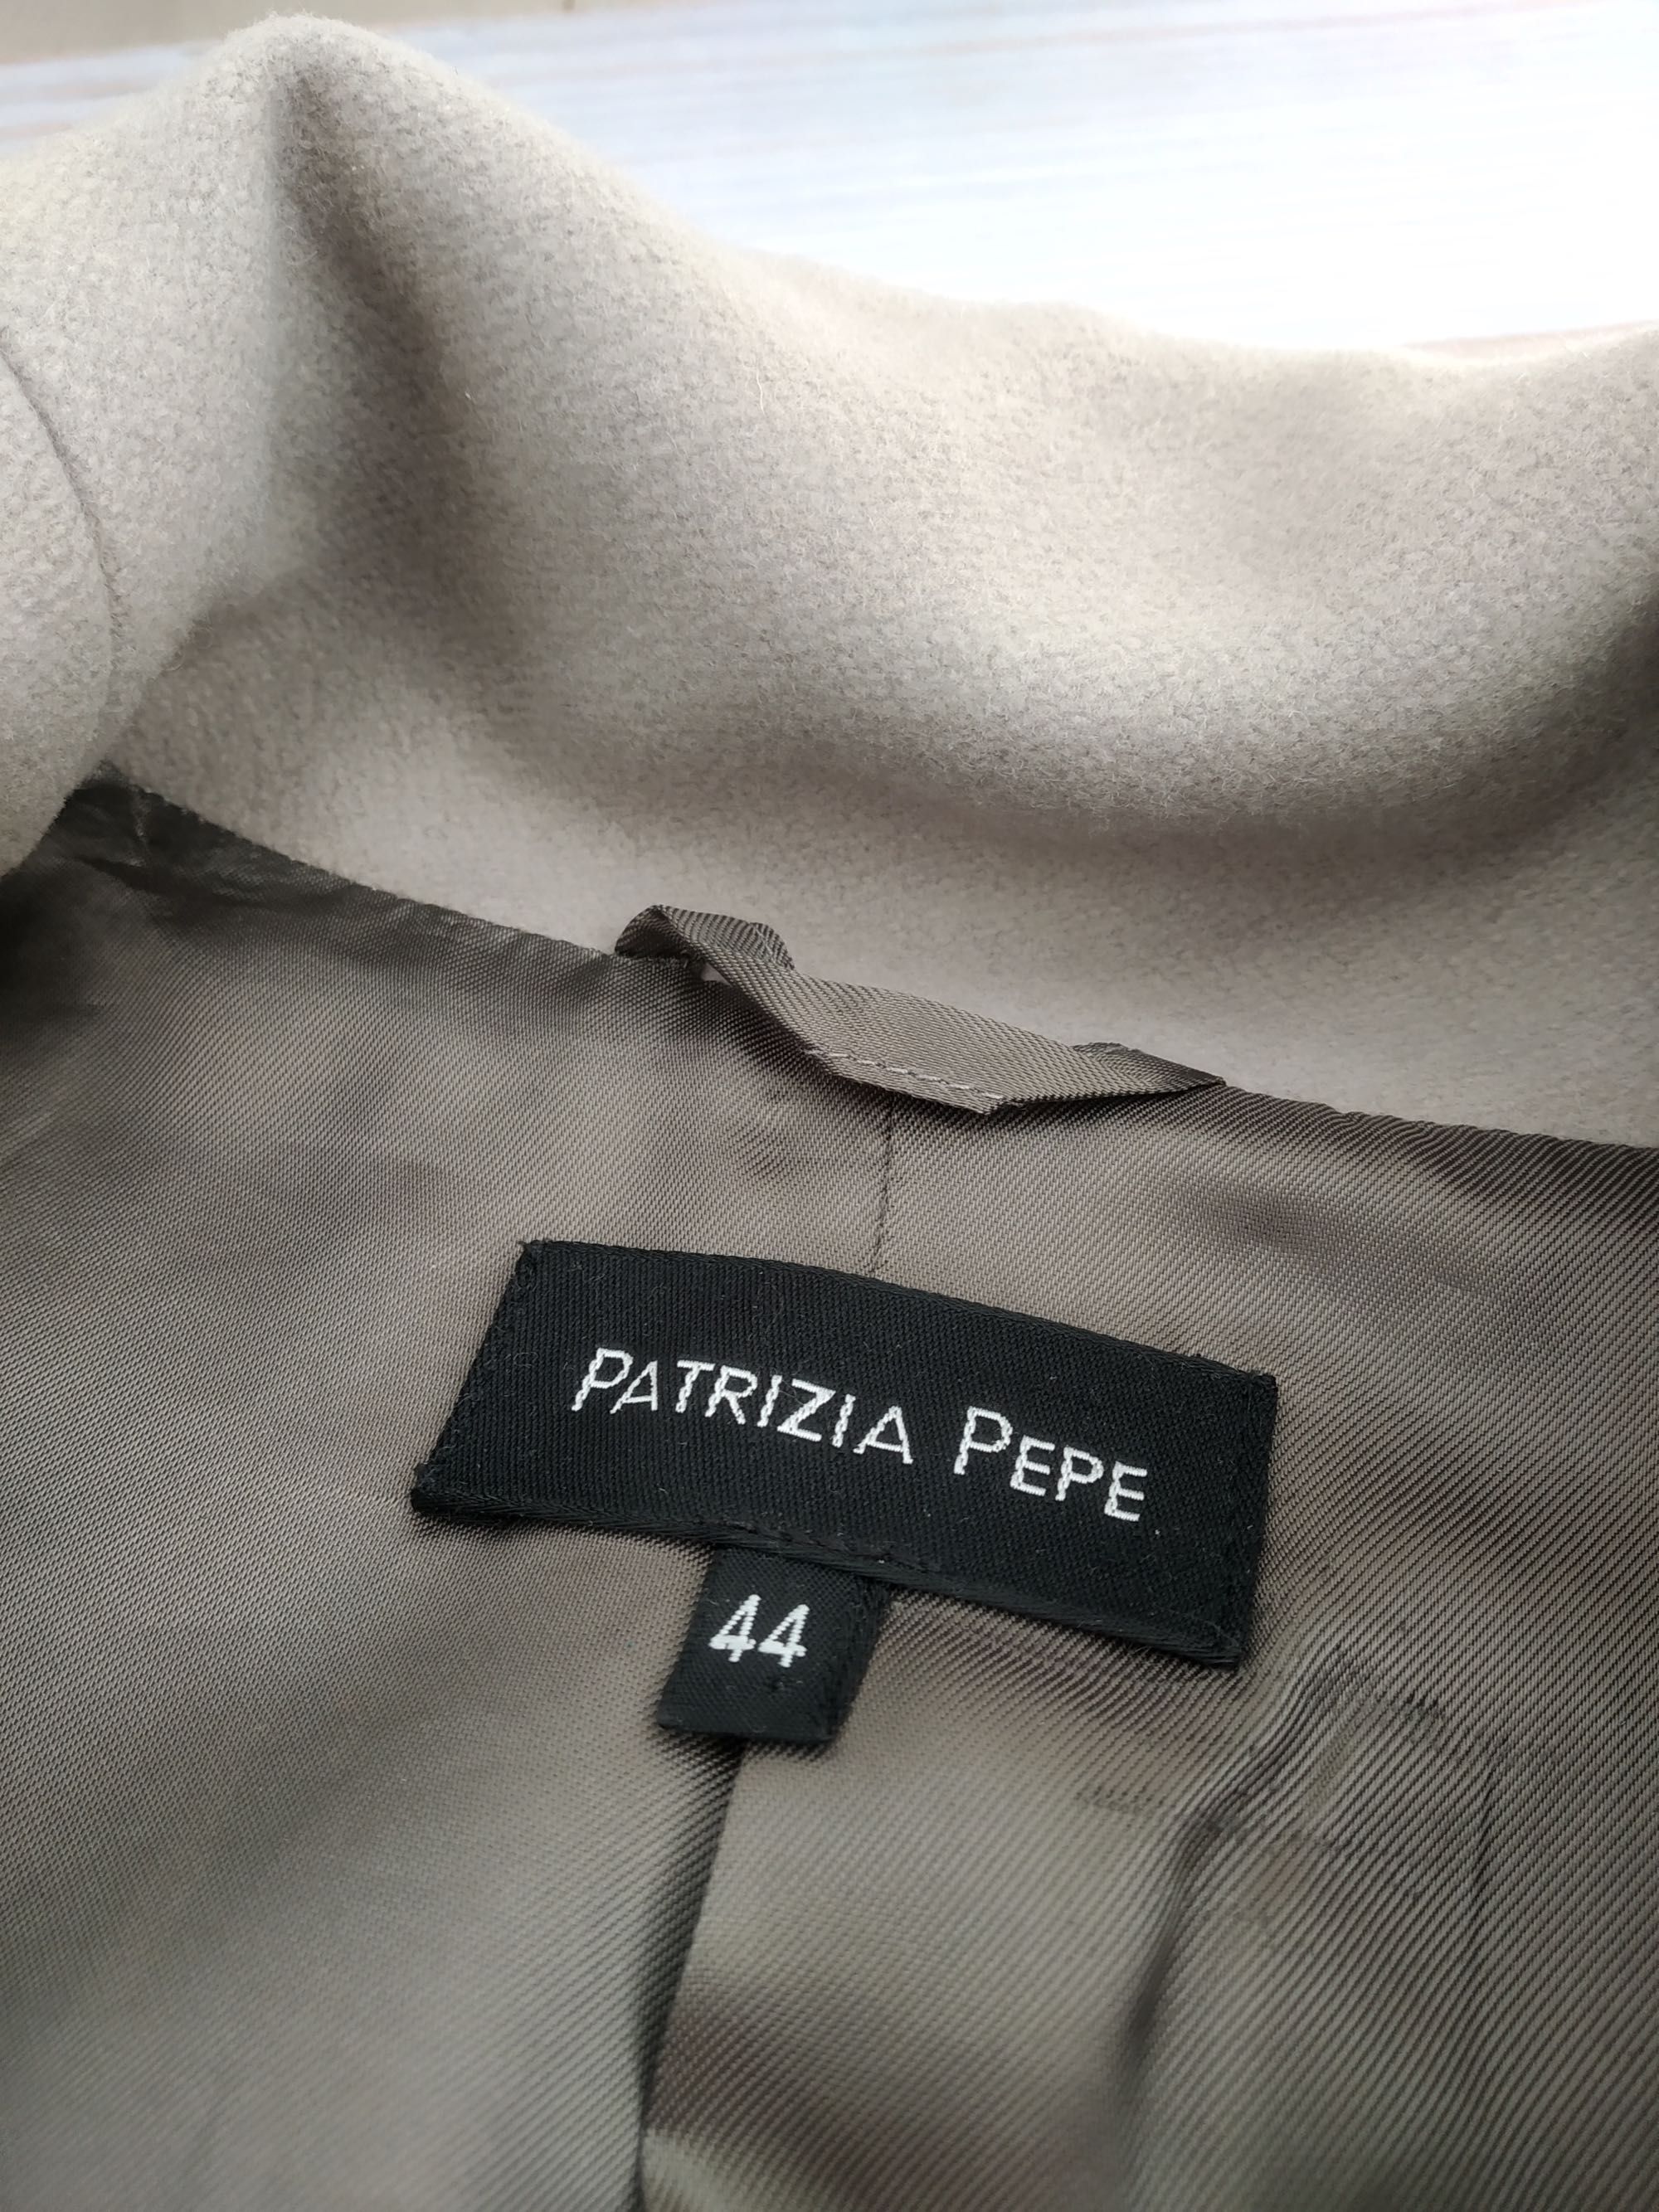 Пальто patrizia pepe, оригінал, 44р, s-m, вовна